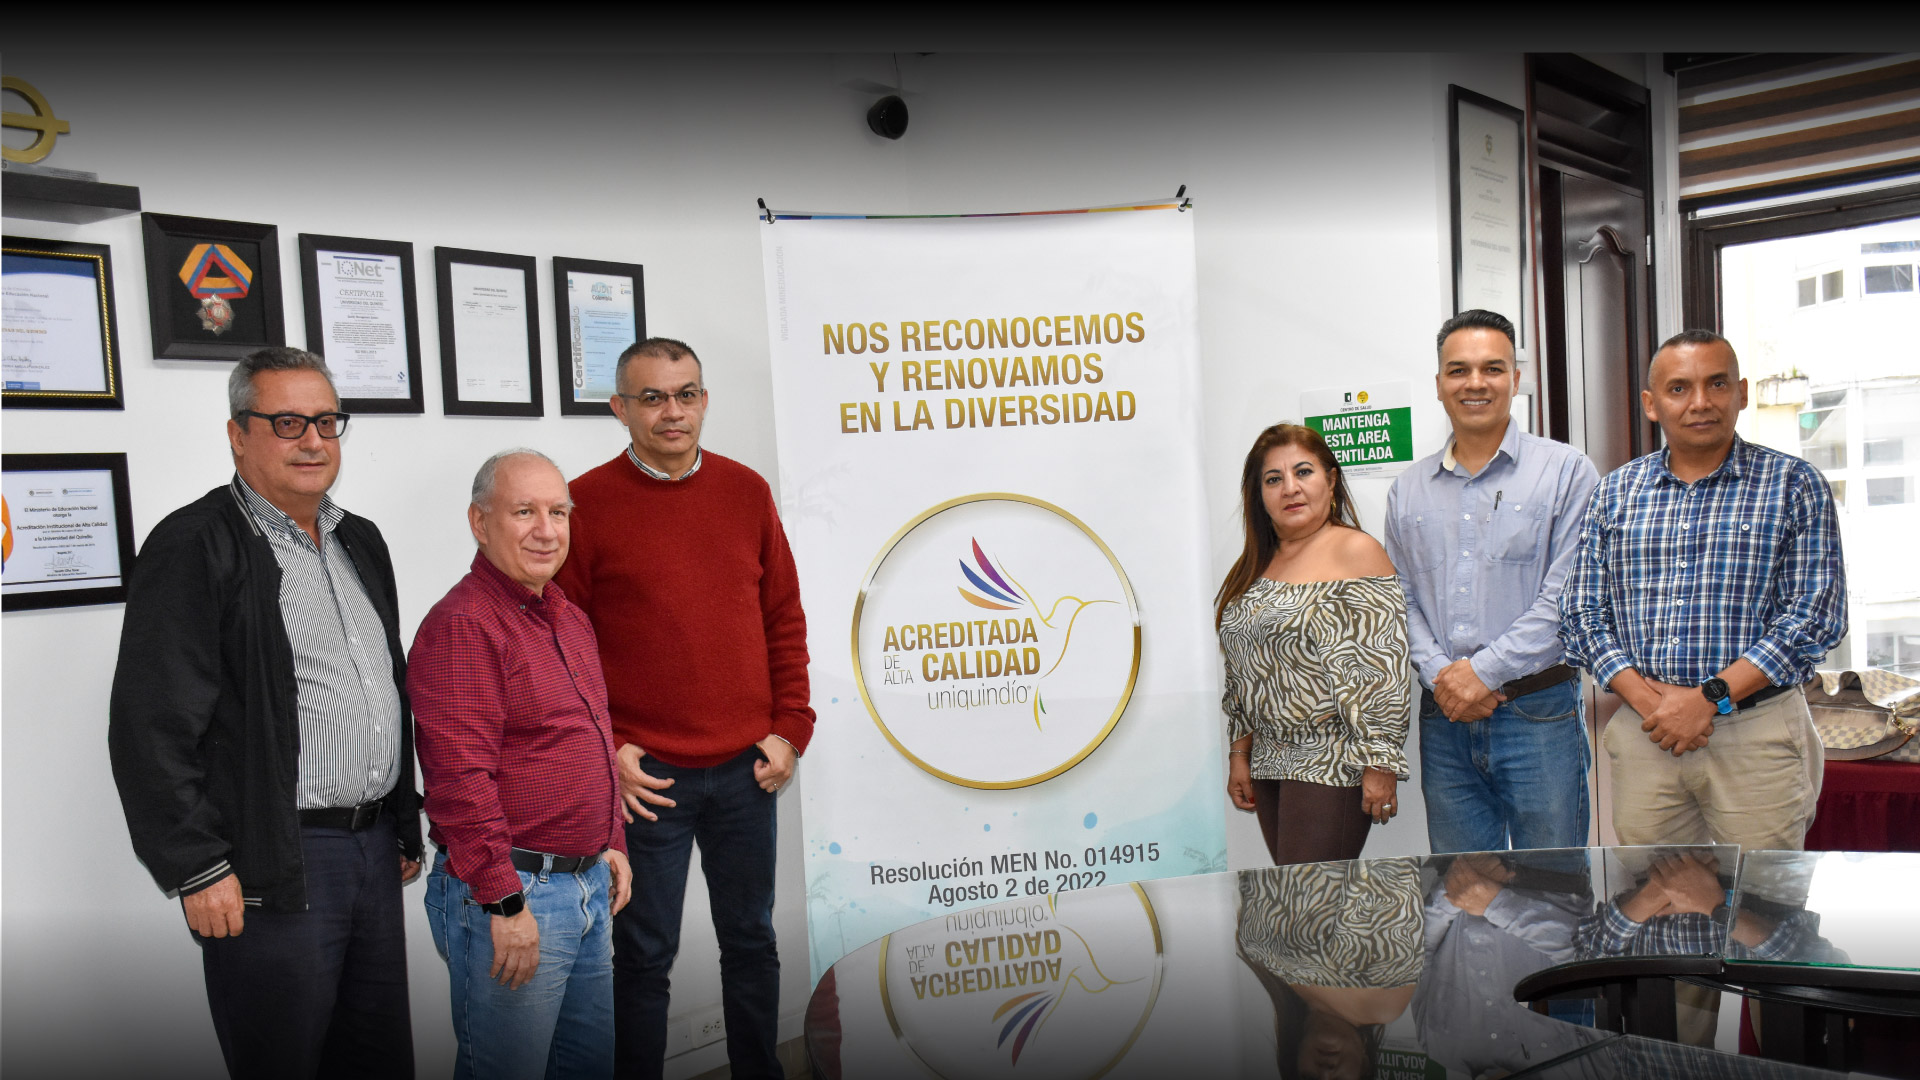 Uniquindío llega a toda la ciudad gracias a colaboración académica con el Instituto Técnico Industrial José María Ramírez H.